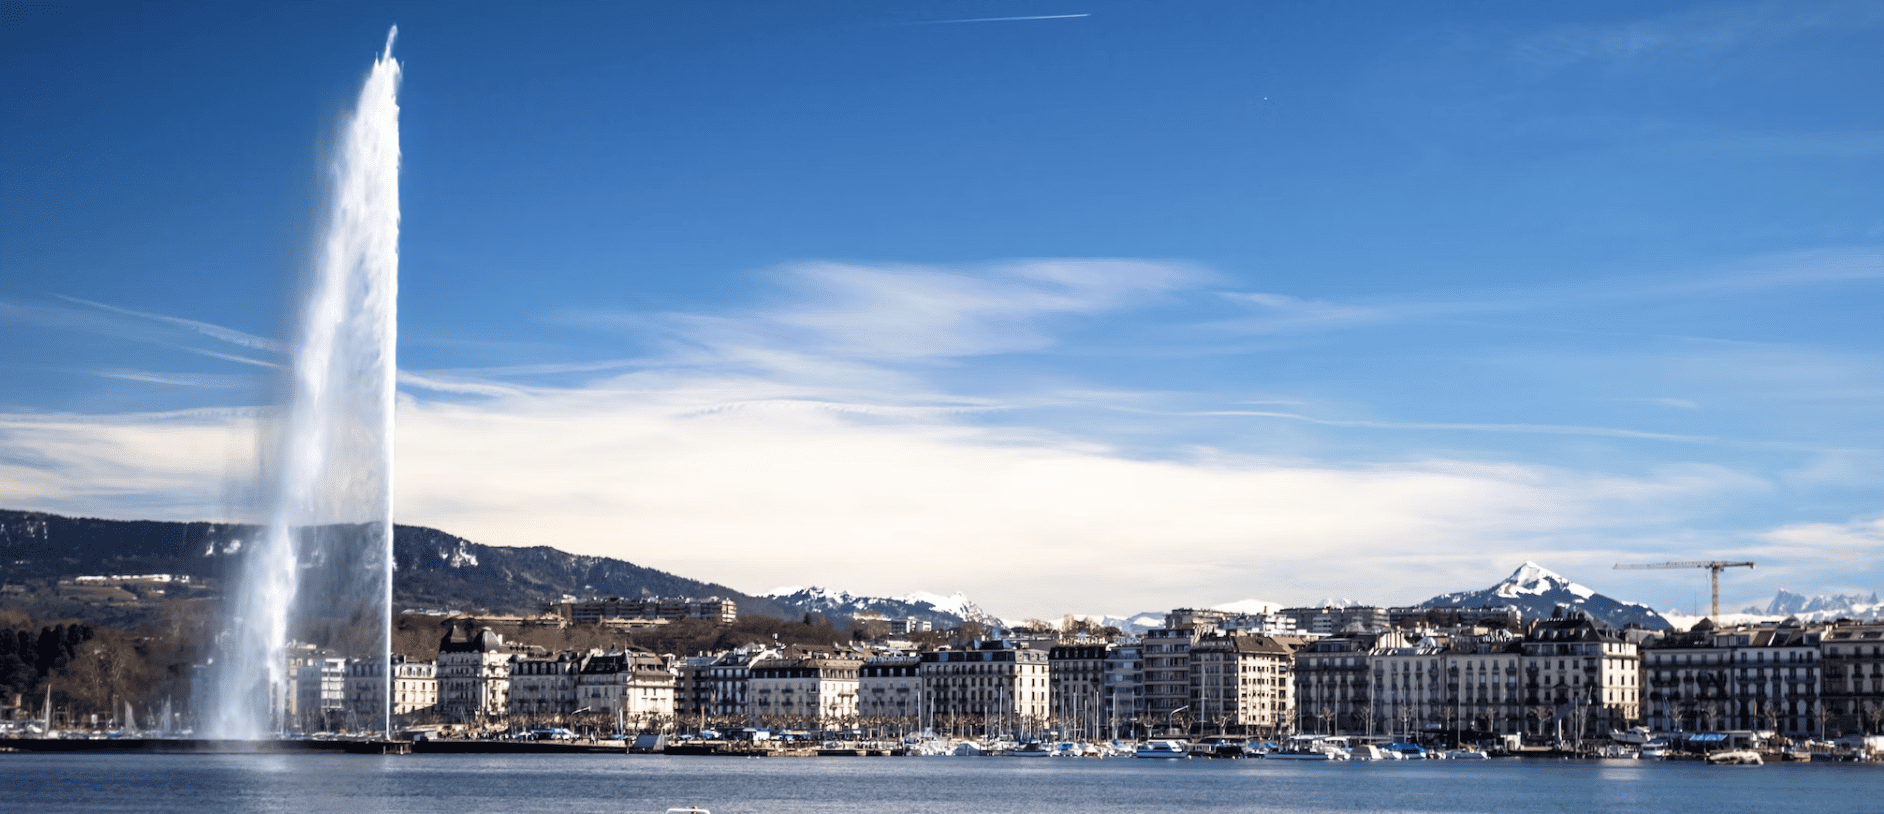 Liste der 3 größten Unternehmen in Genf